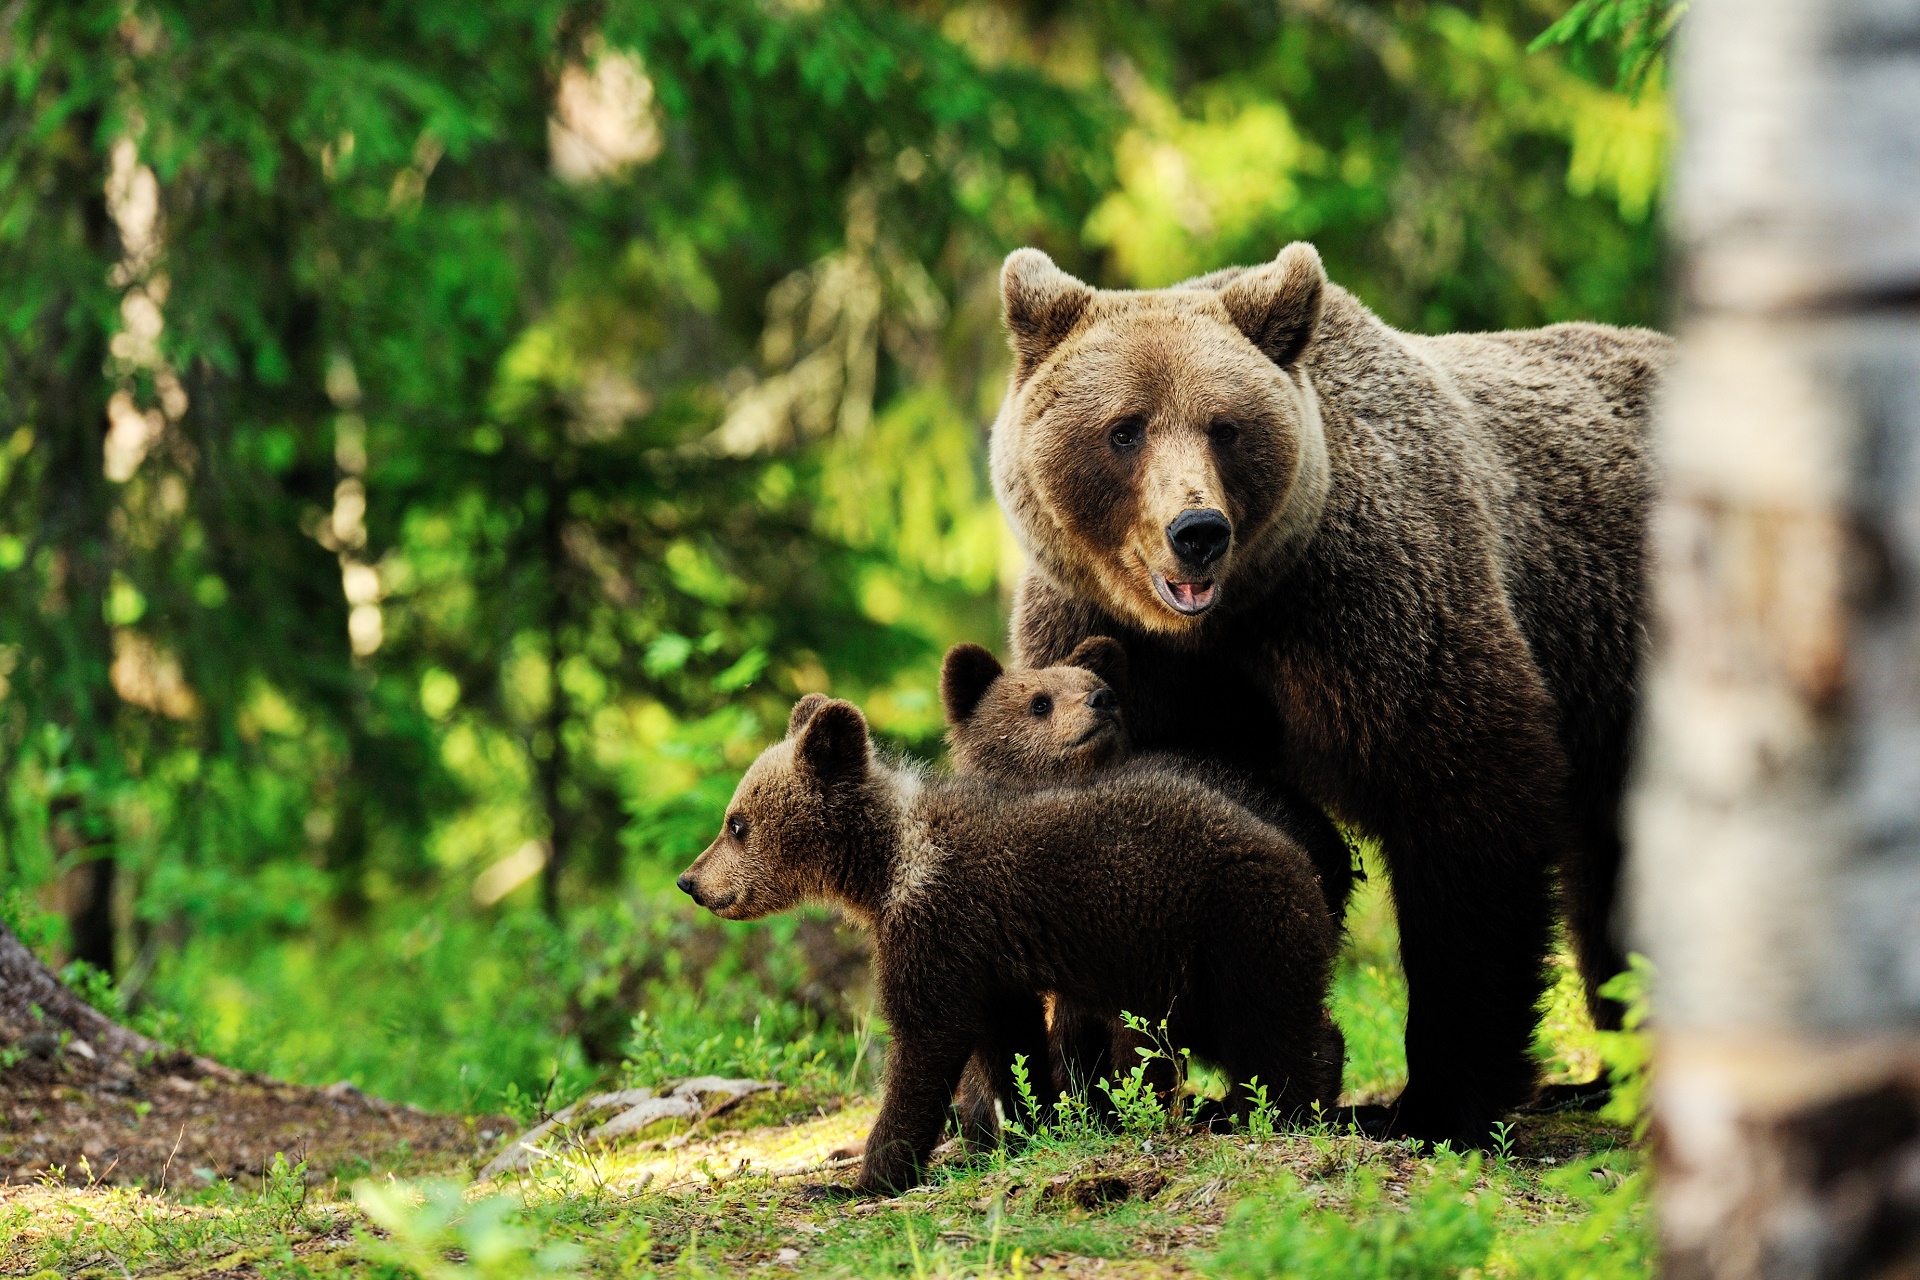 bär wallpaper,brown bear,mammal,vertebrate,terrestrial animal,grizzly bear